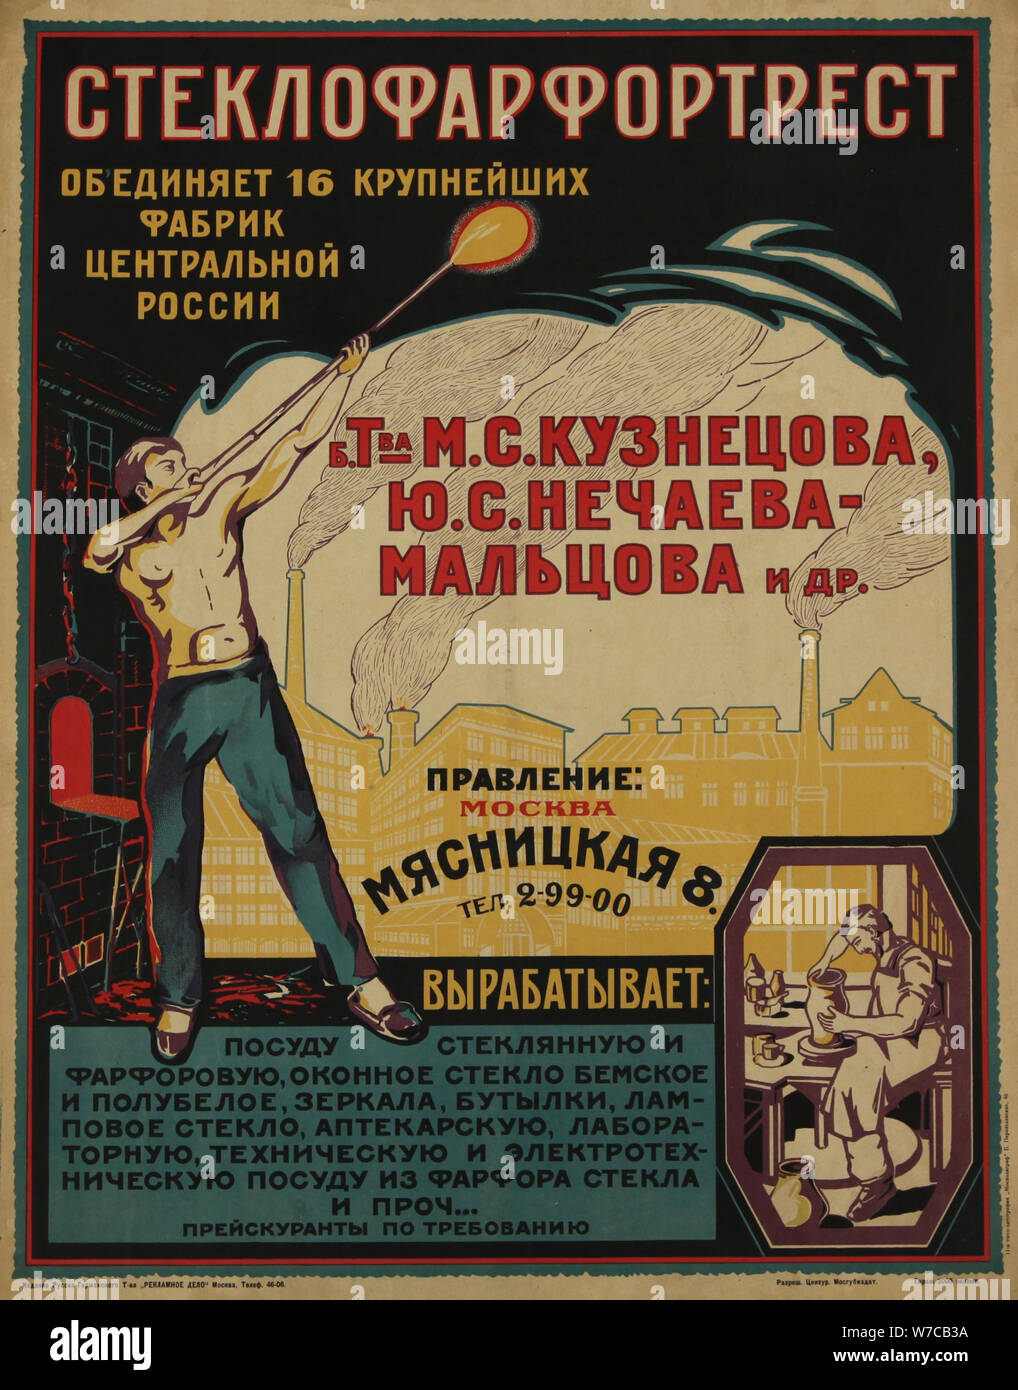 Plakat für die Glas- und Porzellanindustrie, ca 1921-1923. Stockfoto